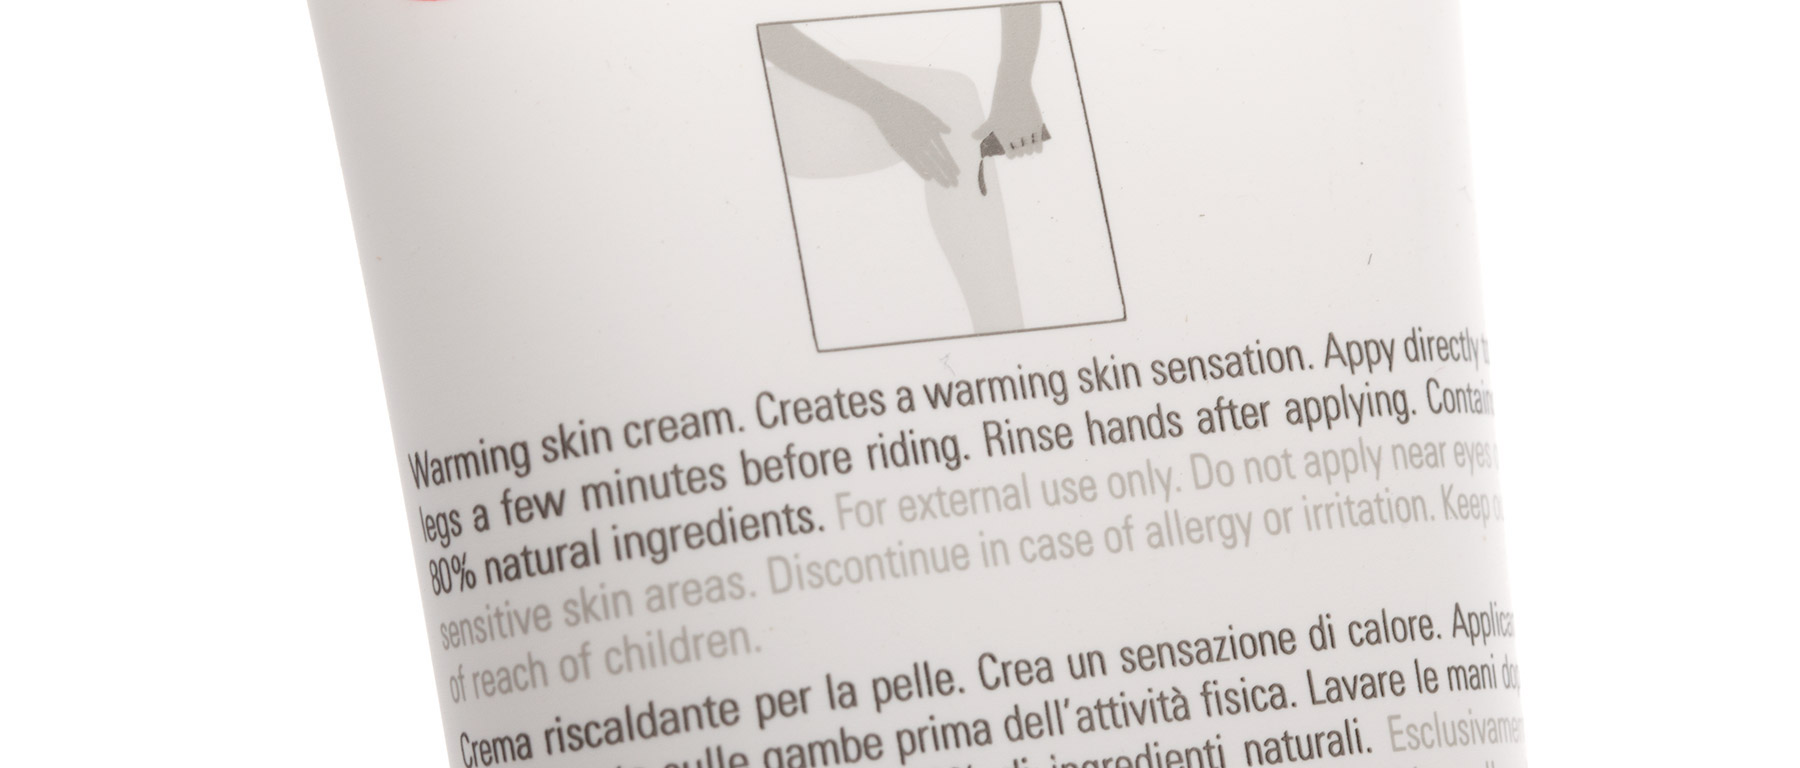 Castelli Warming Embro Cream